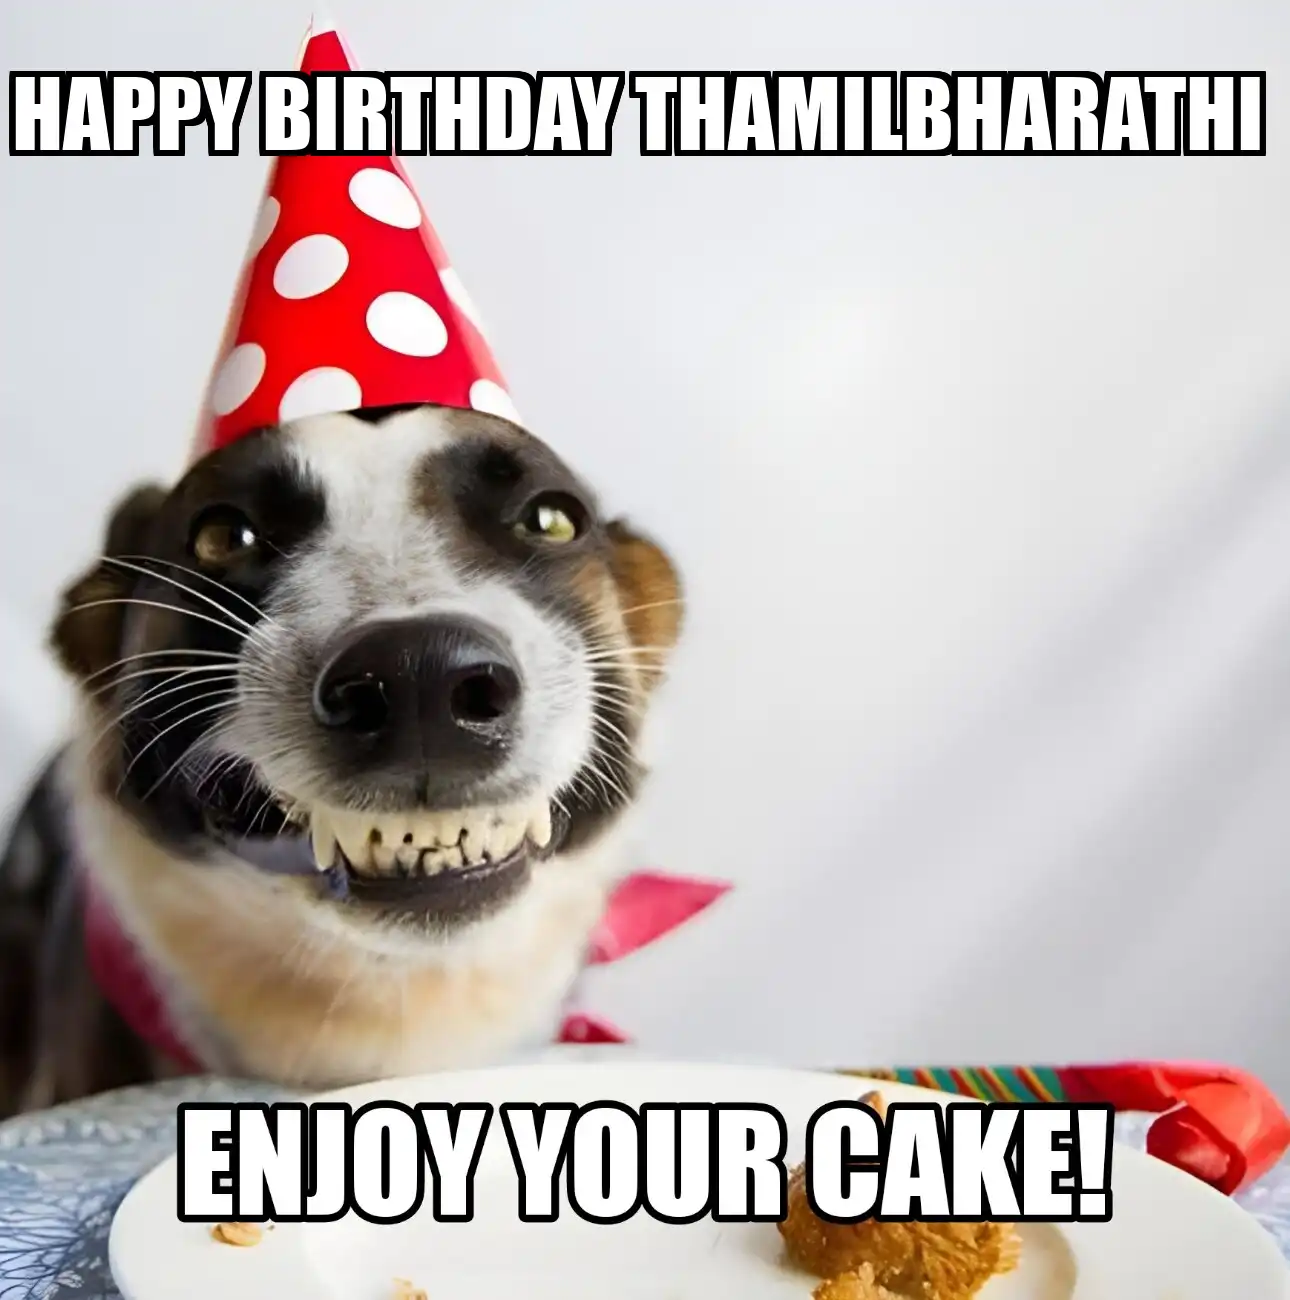 Happy Birthday Thamilbharathi Enjoy Your Cake Dog Meme